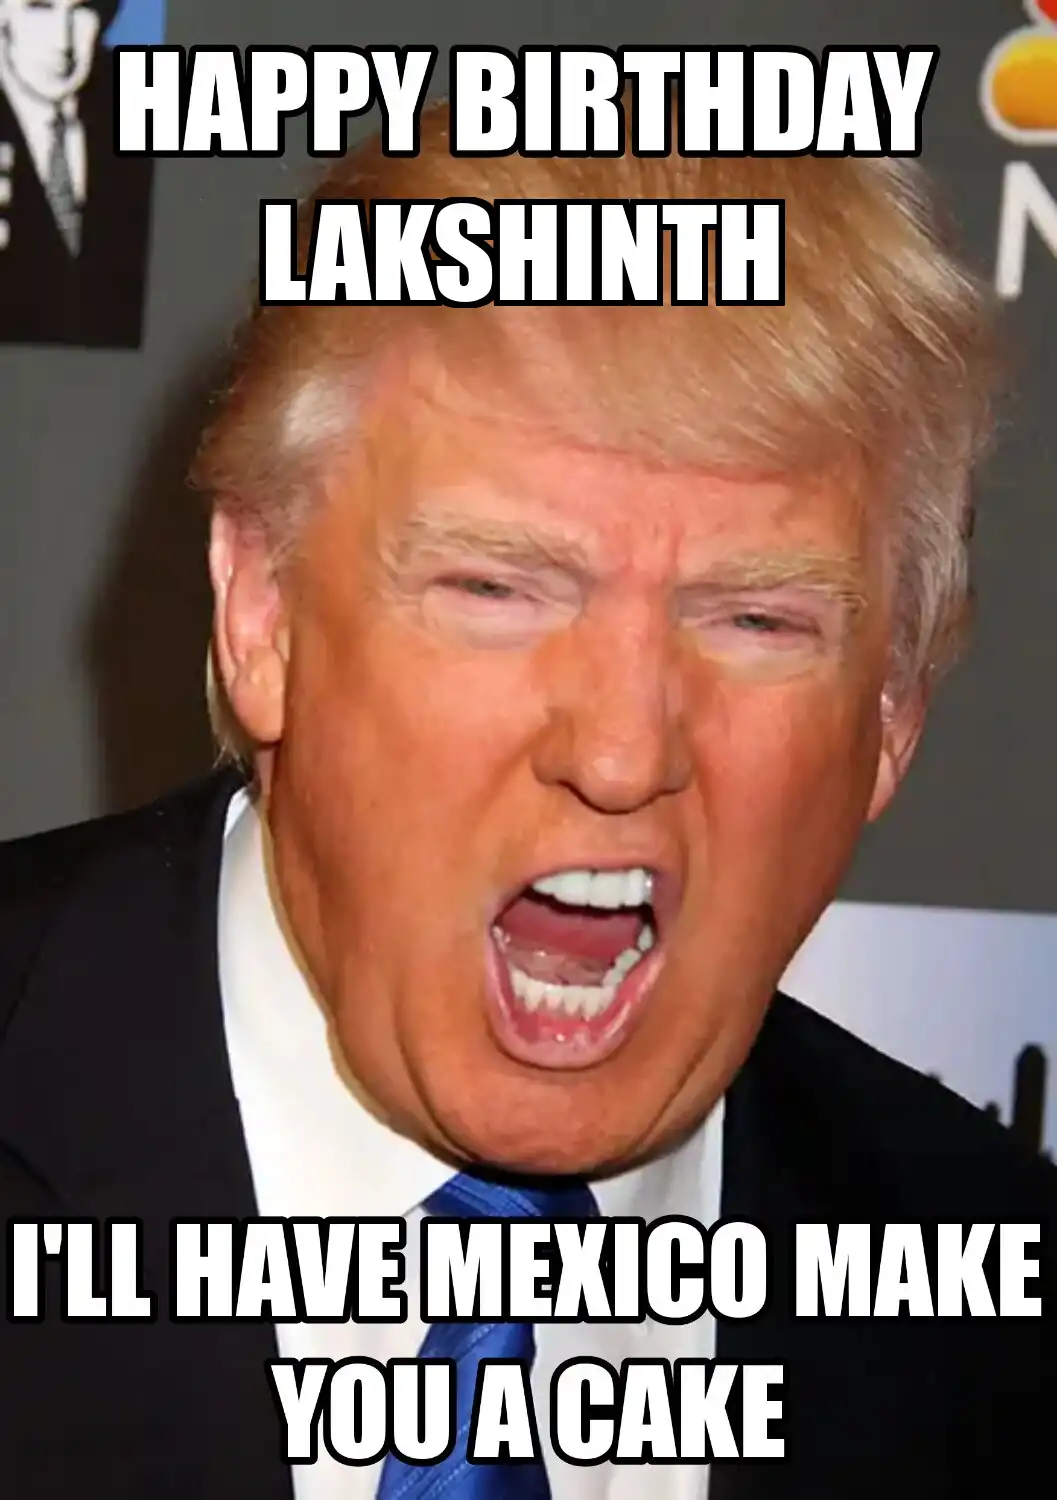 Happy Birthday Lakshinth Mexico Make You A Cake Meme